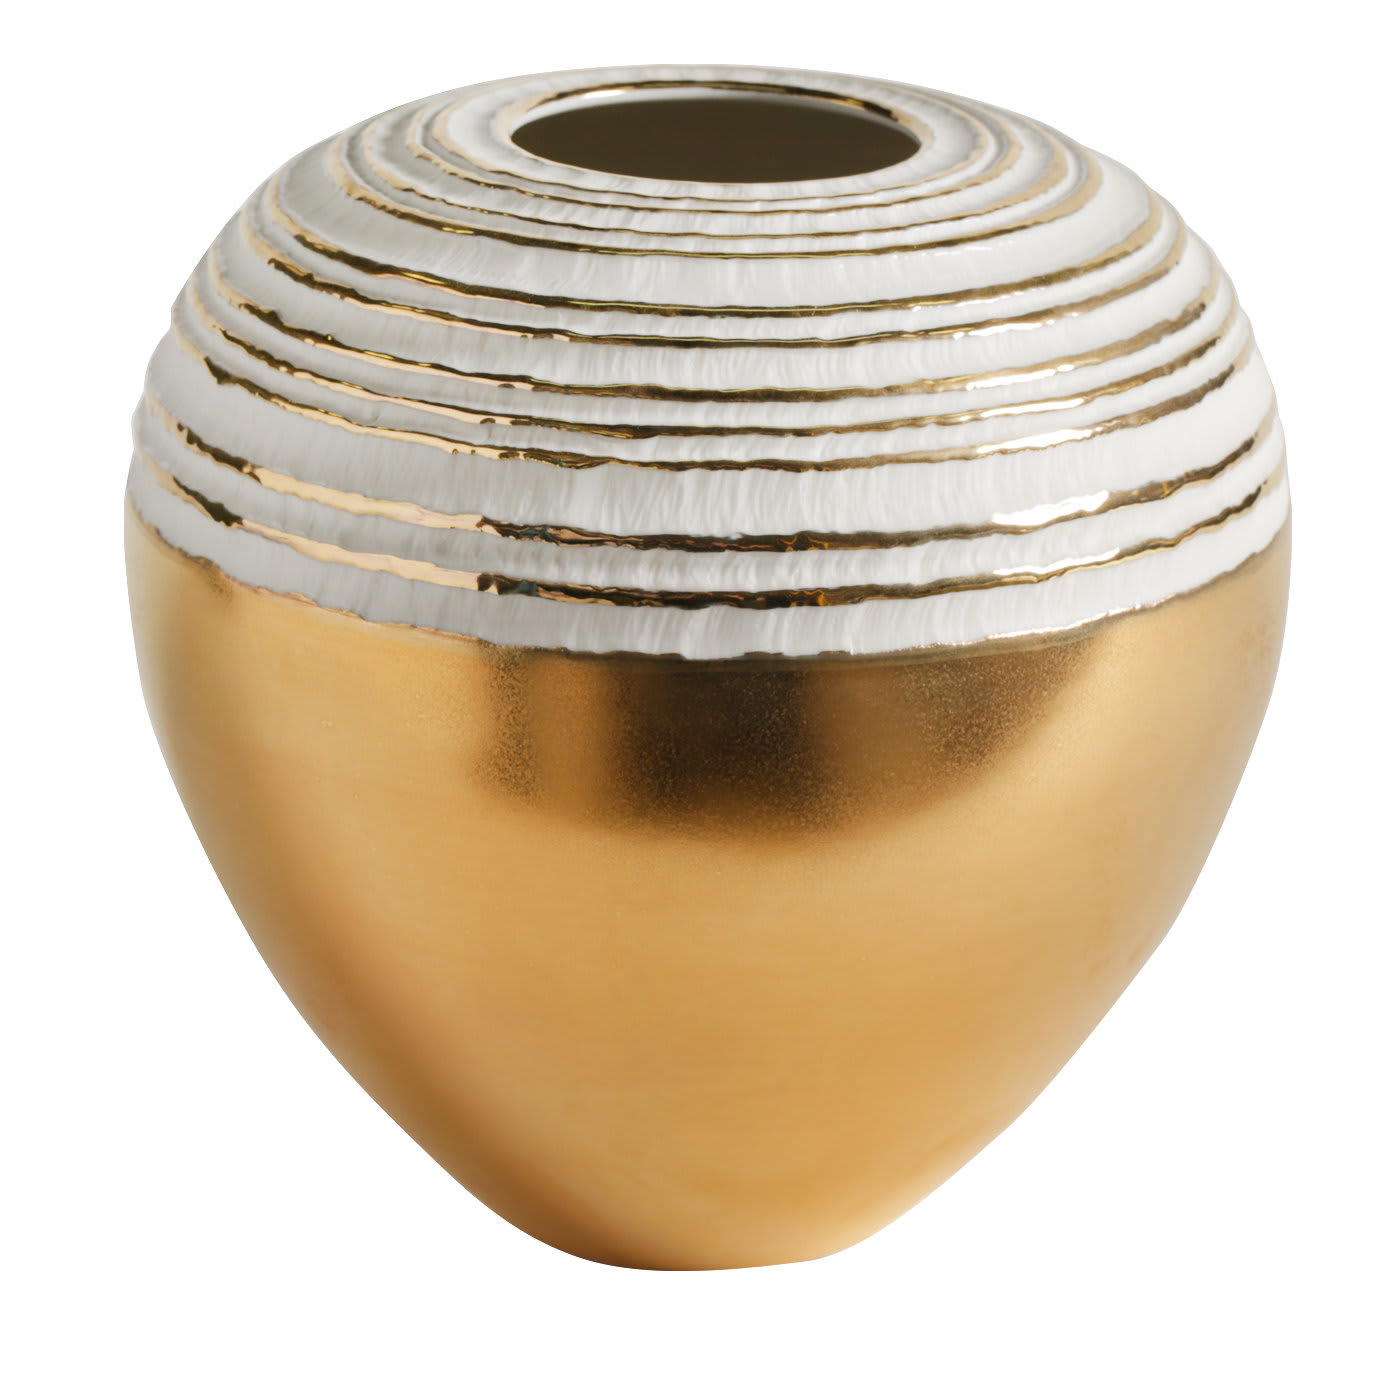 Antithesis Gold Sphera Vase - Fos Ceramiche